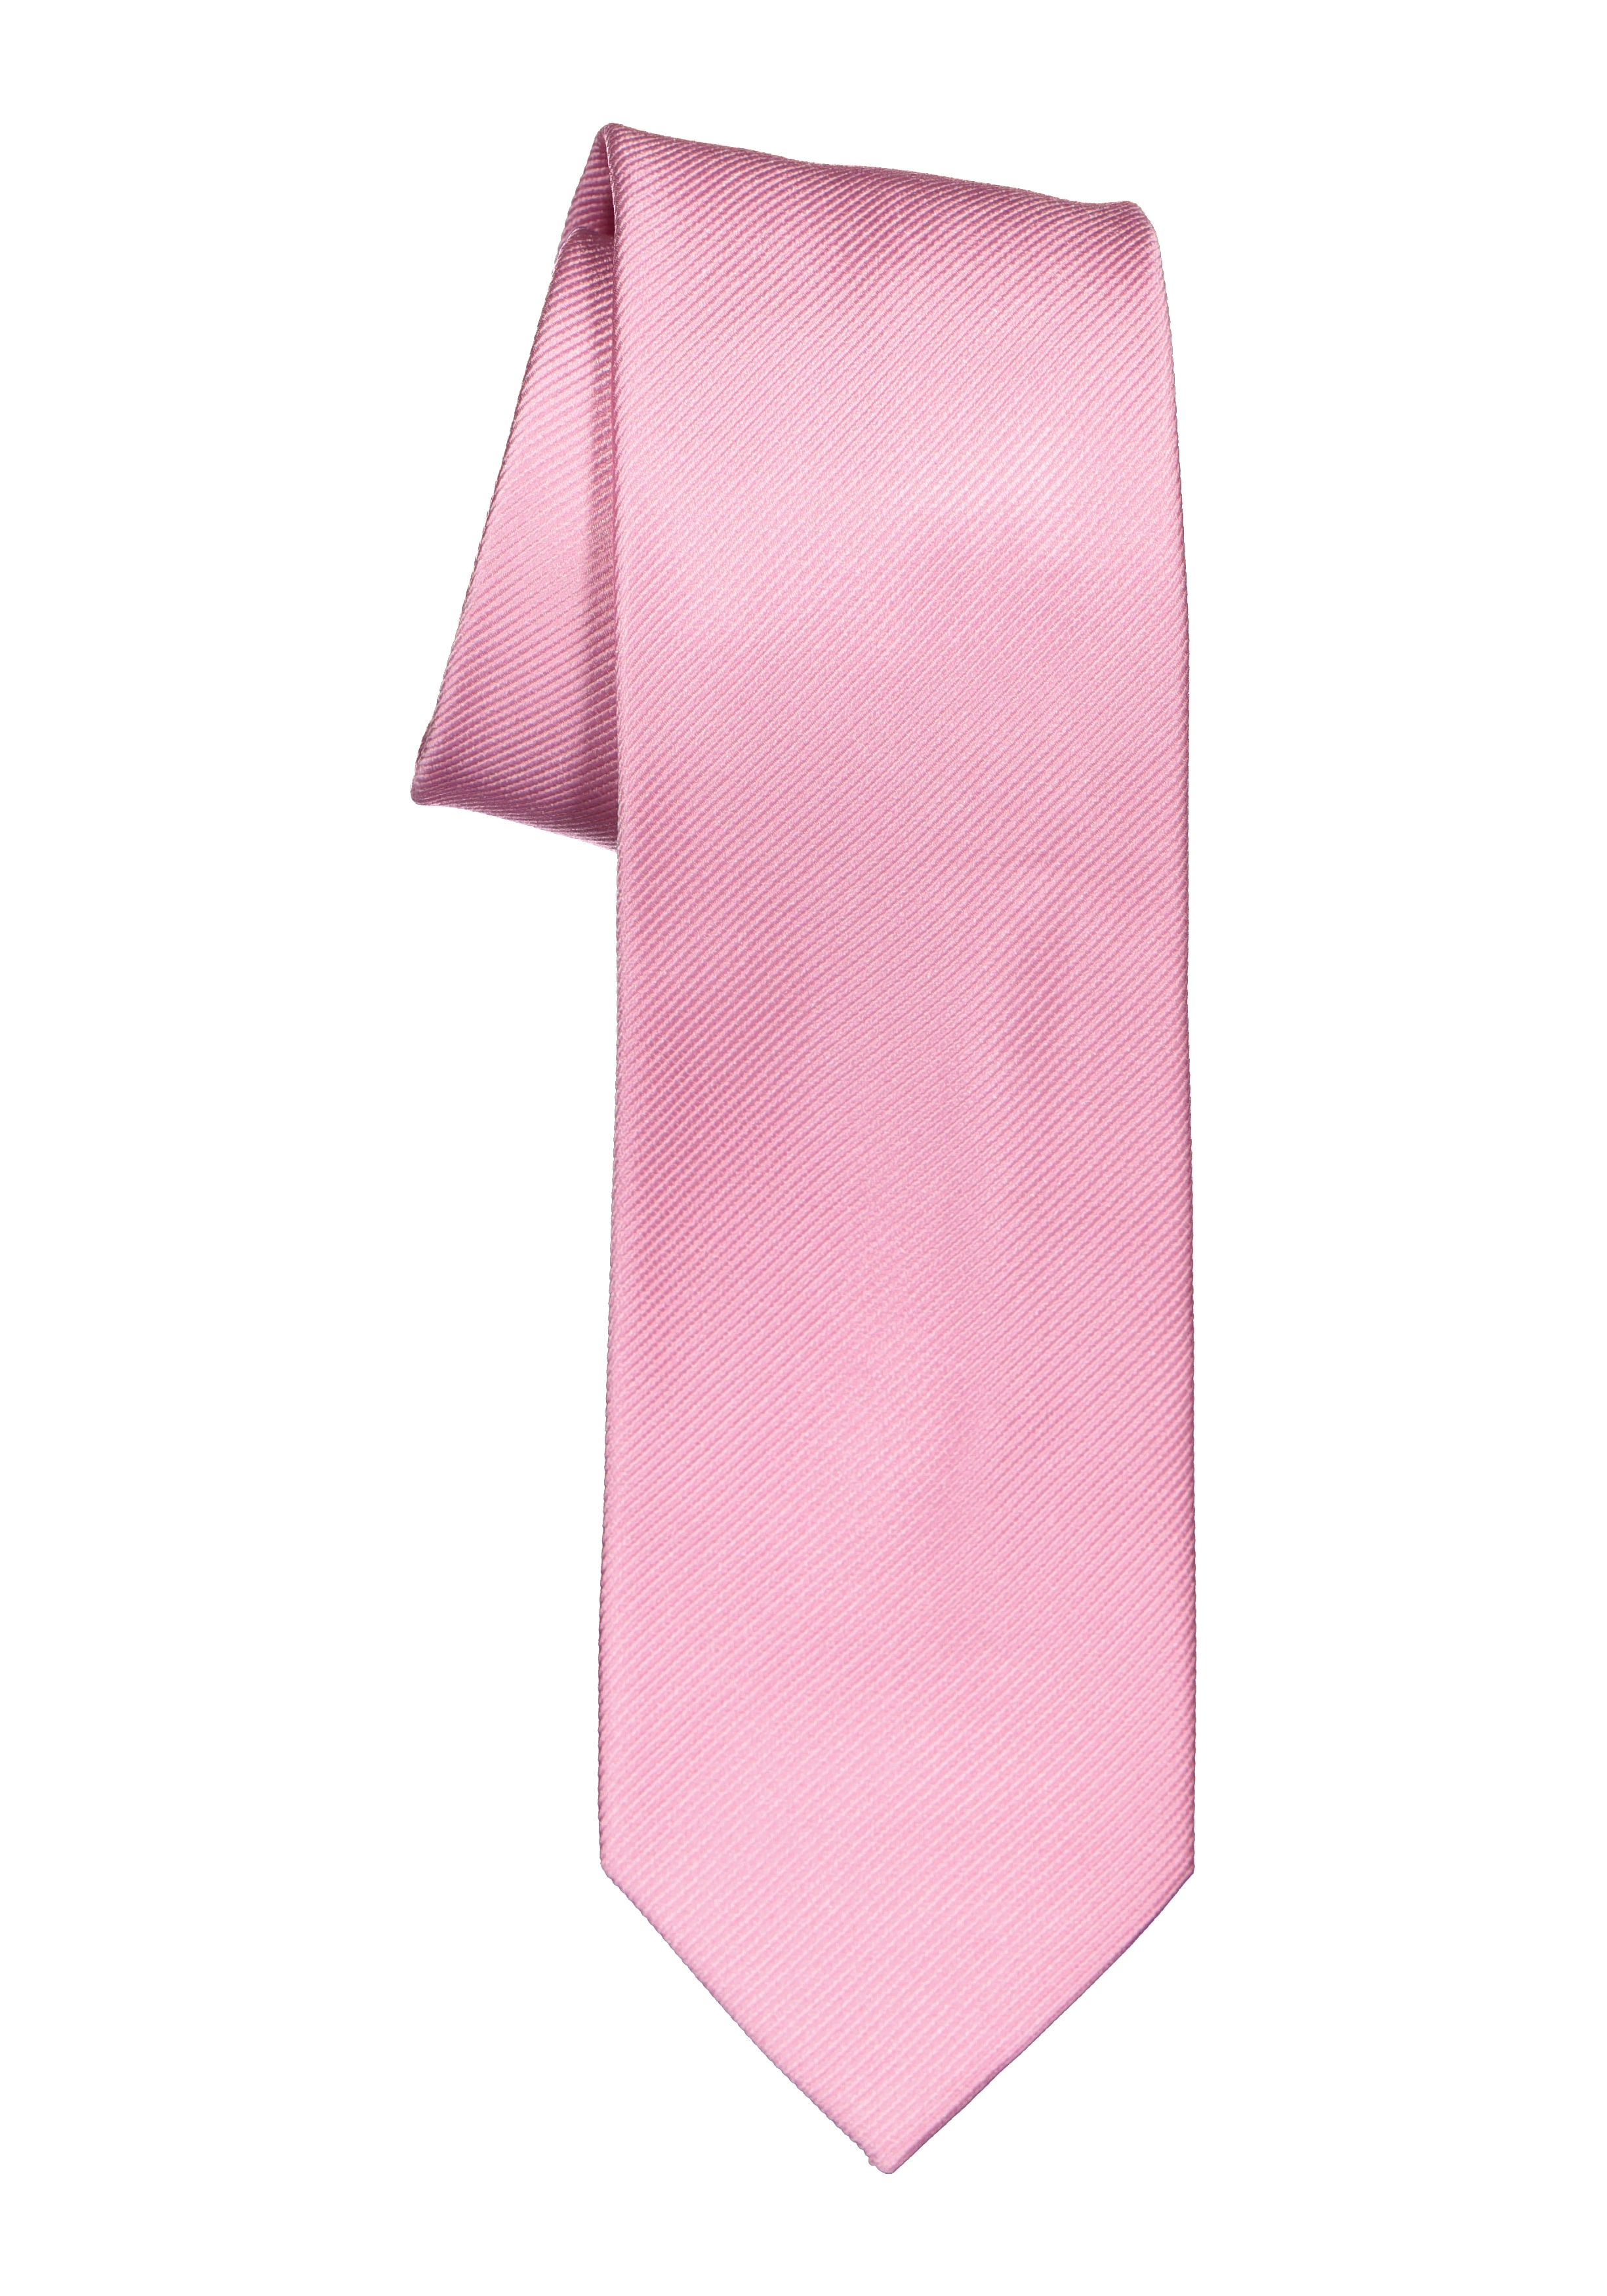 Protestant Spelen met Traditioneel Michaelis stropdas, roze - Zomer SALE tot 70% korting